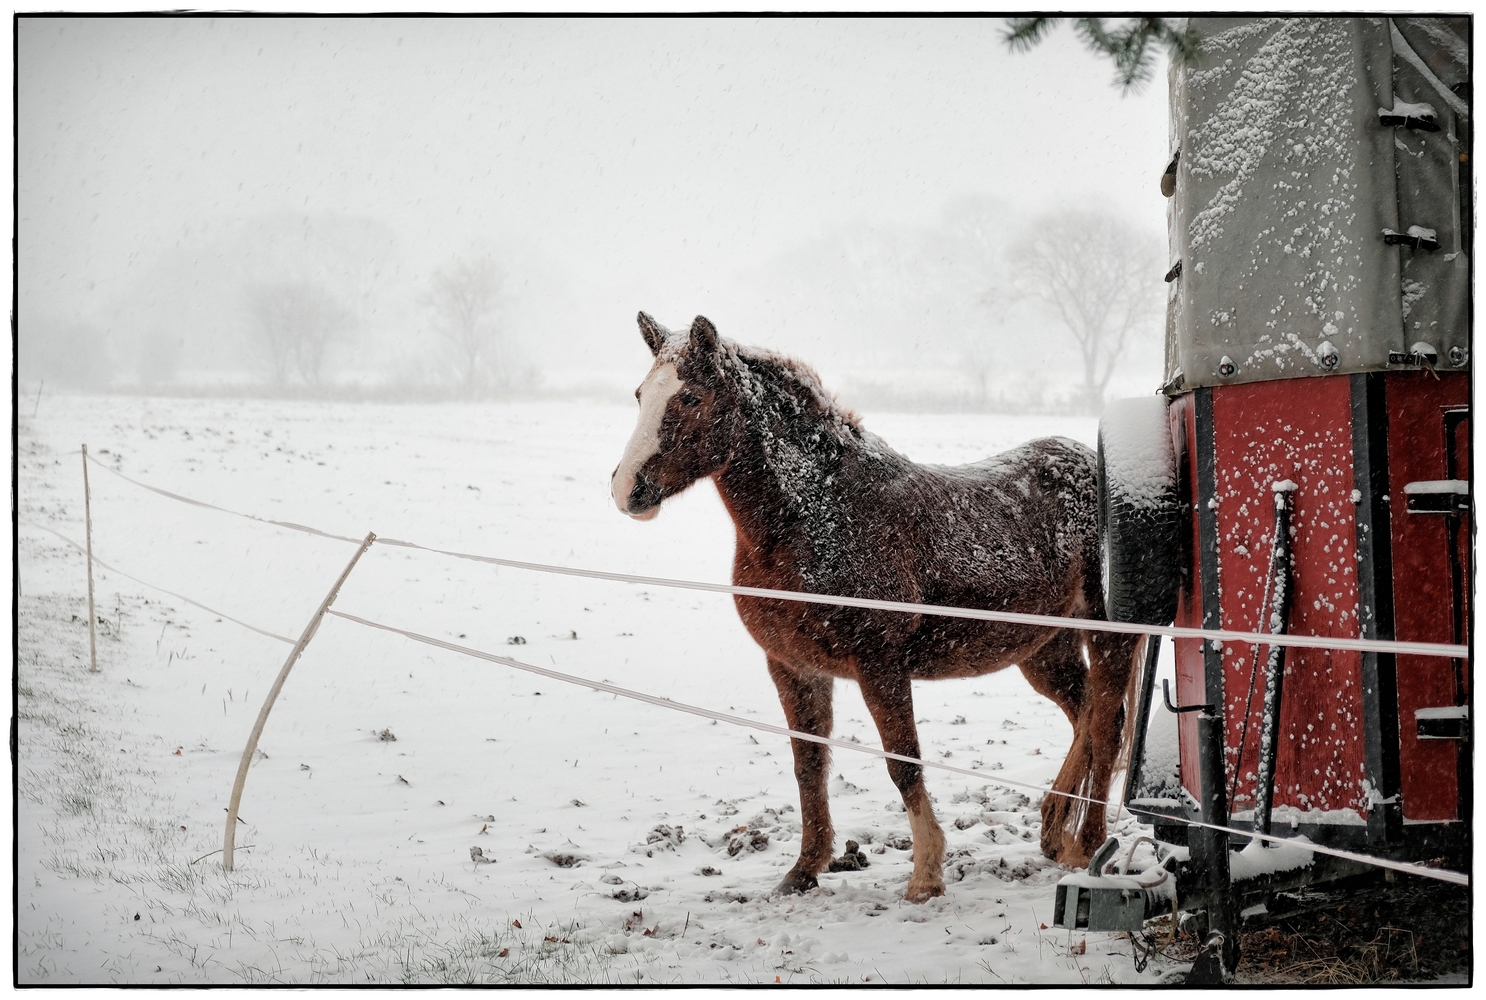 Pferdekoppel im Winter